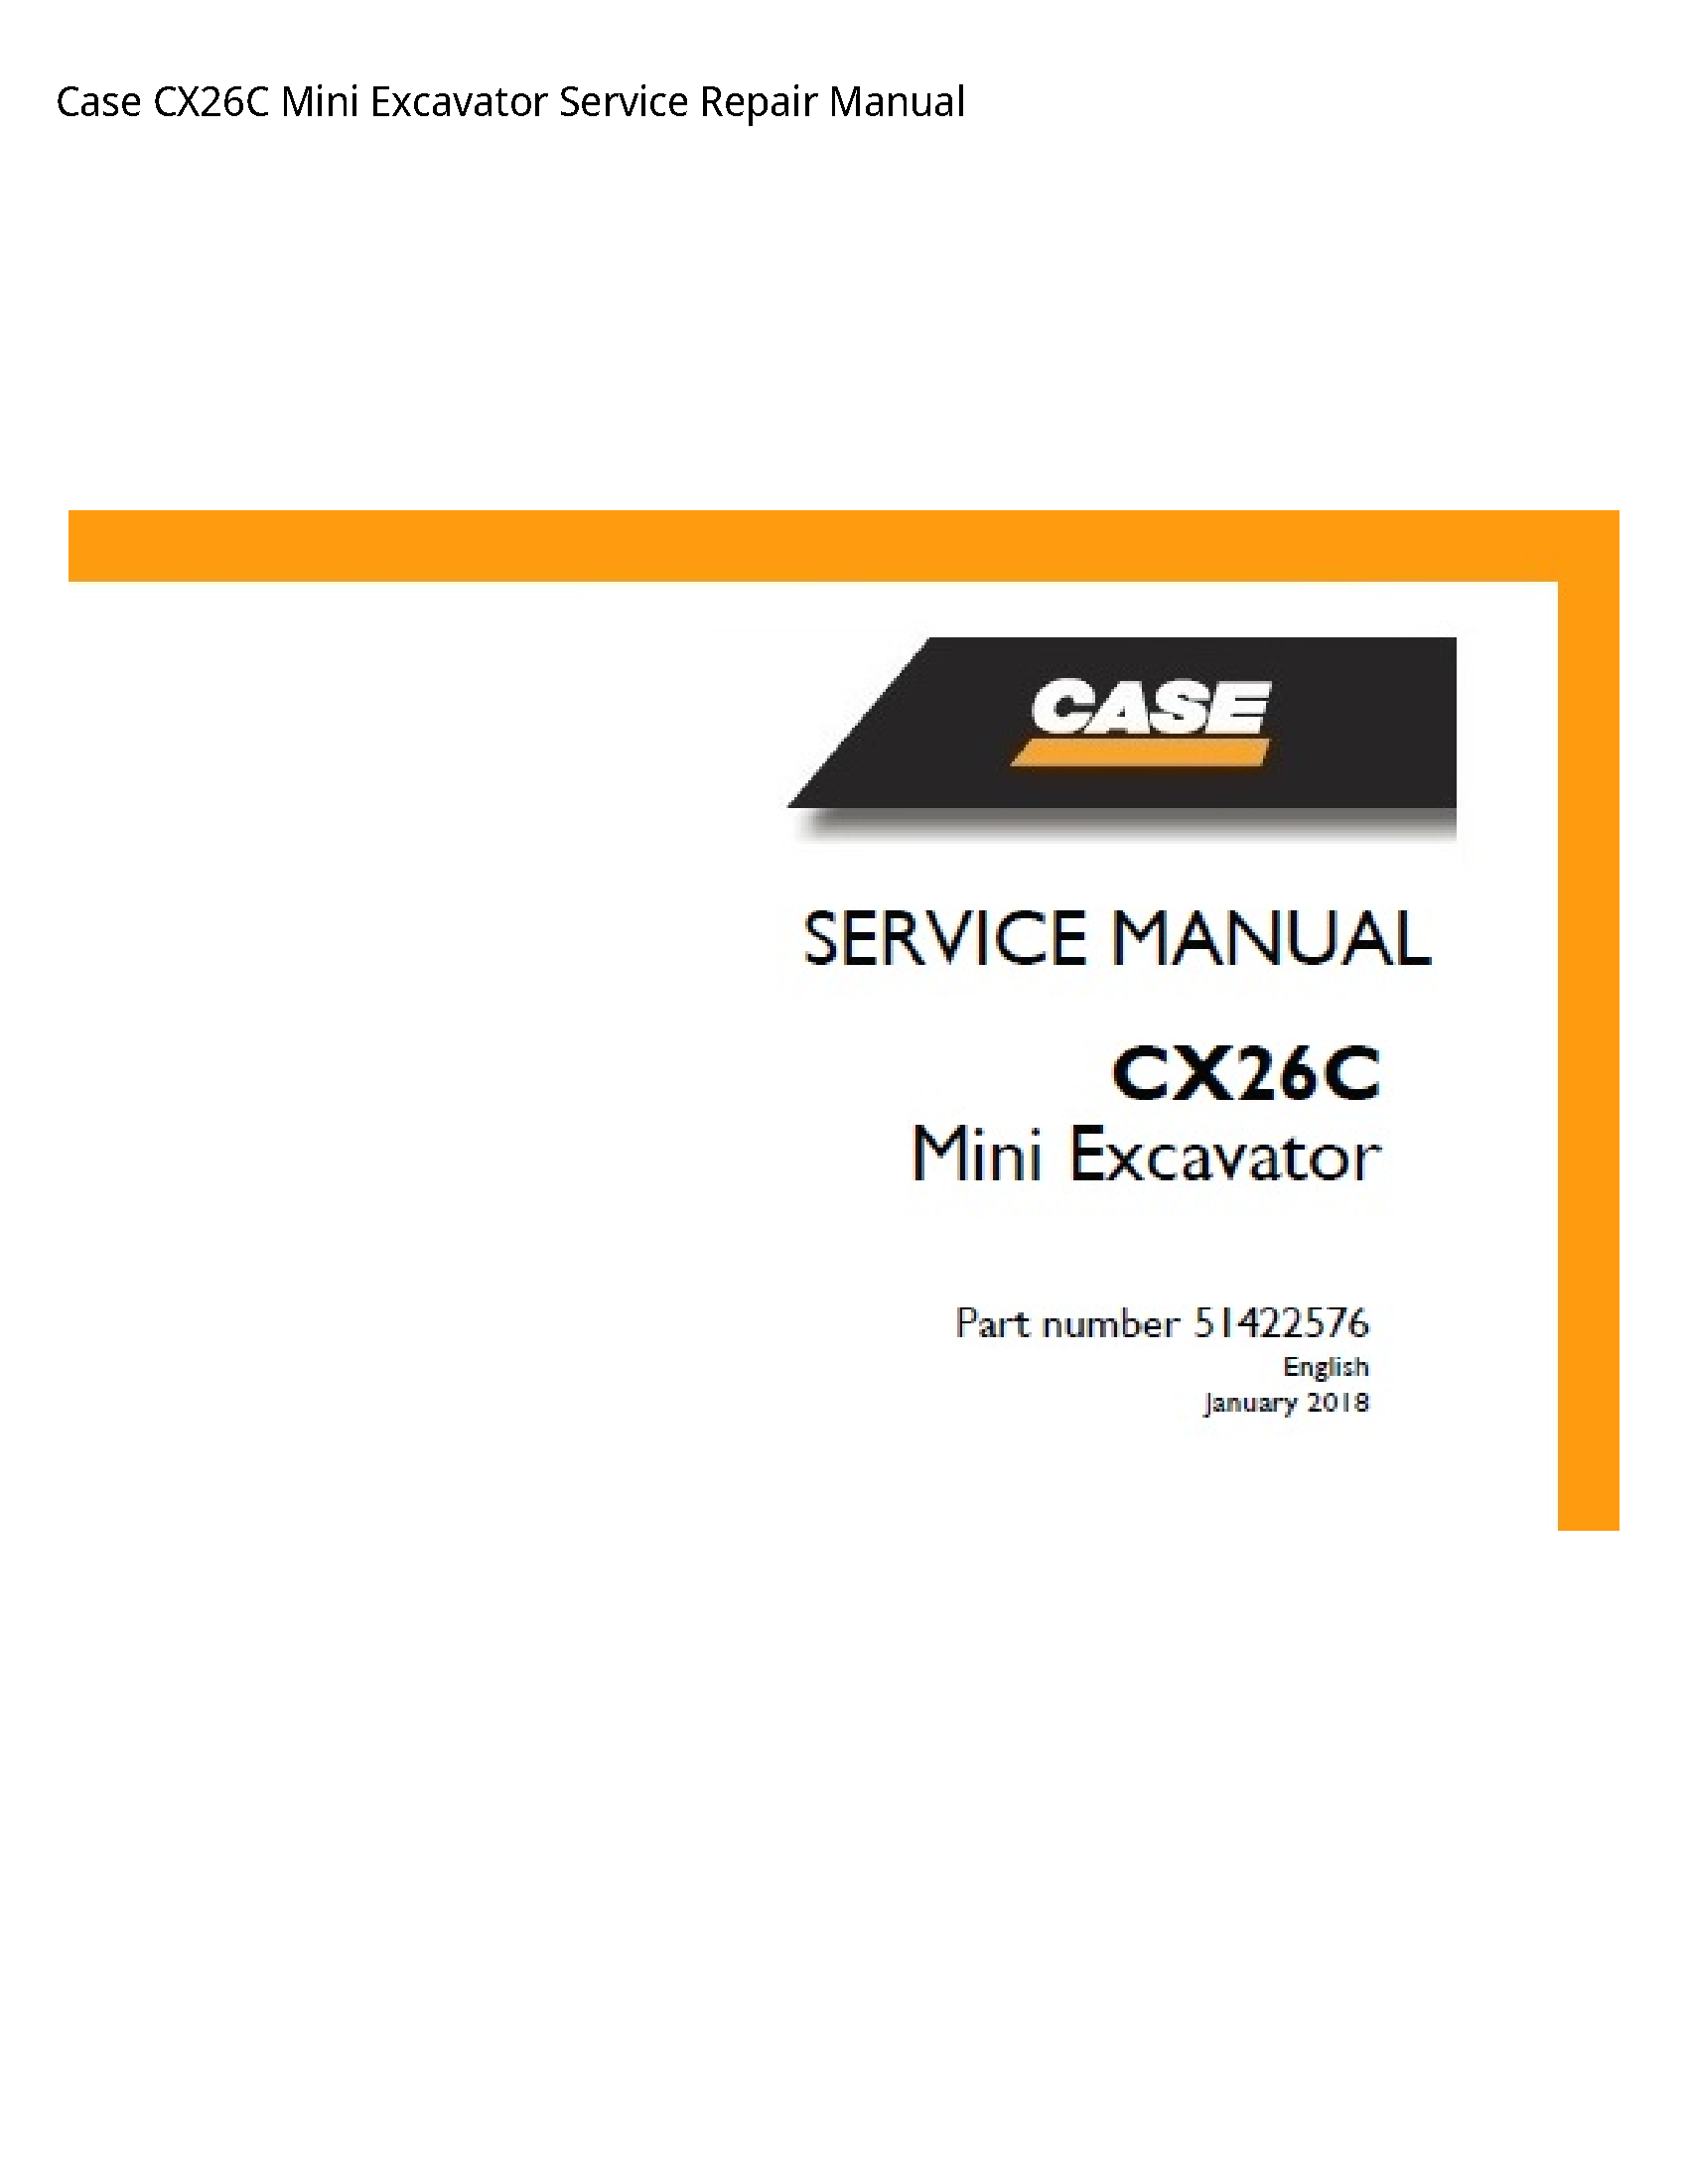 Case/Case IH CX26C Mini Excavator manual